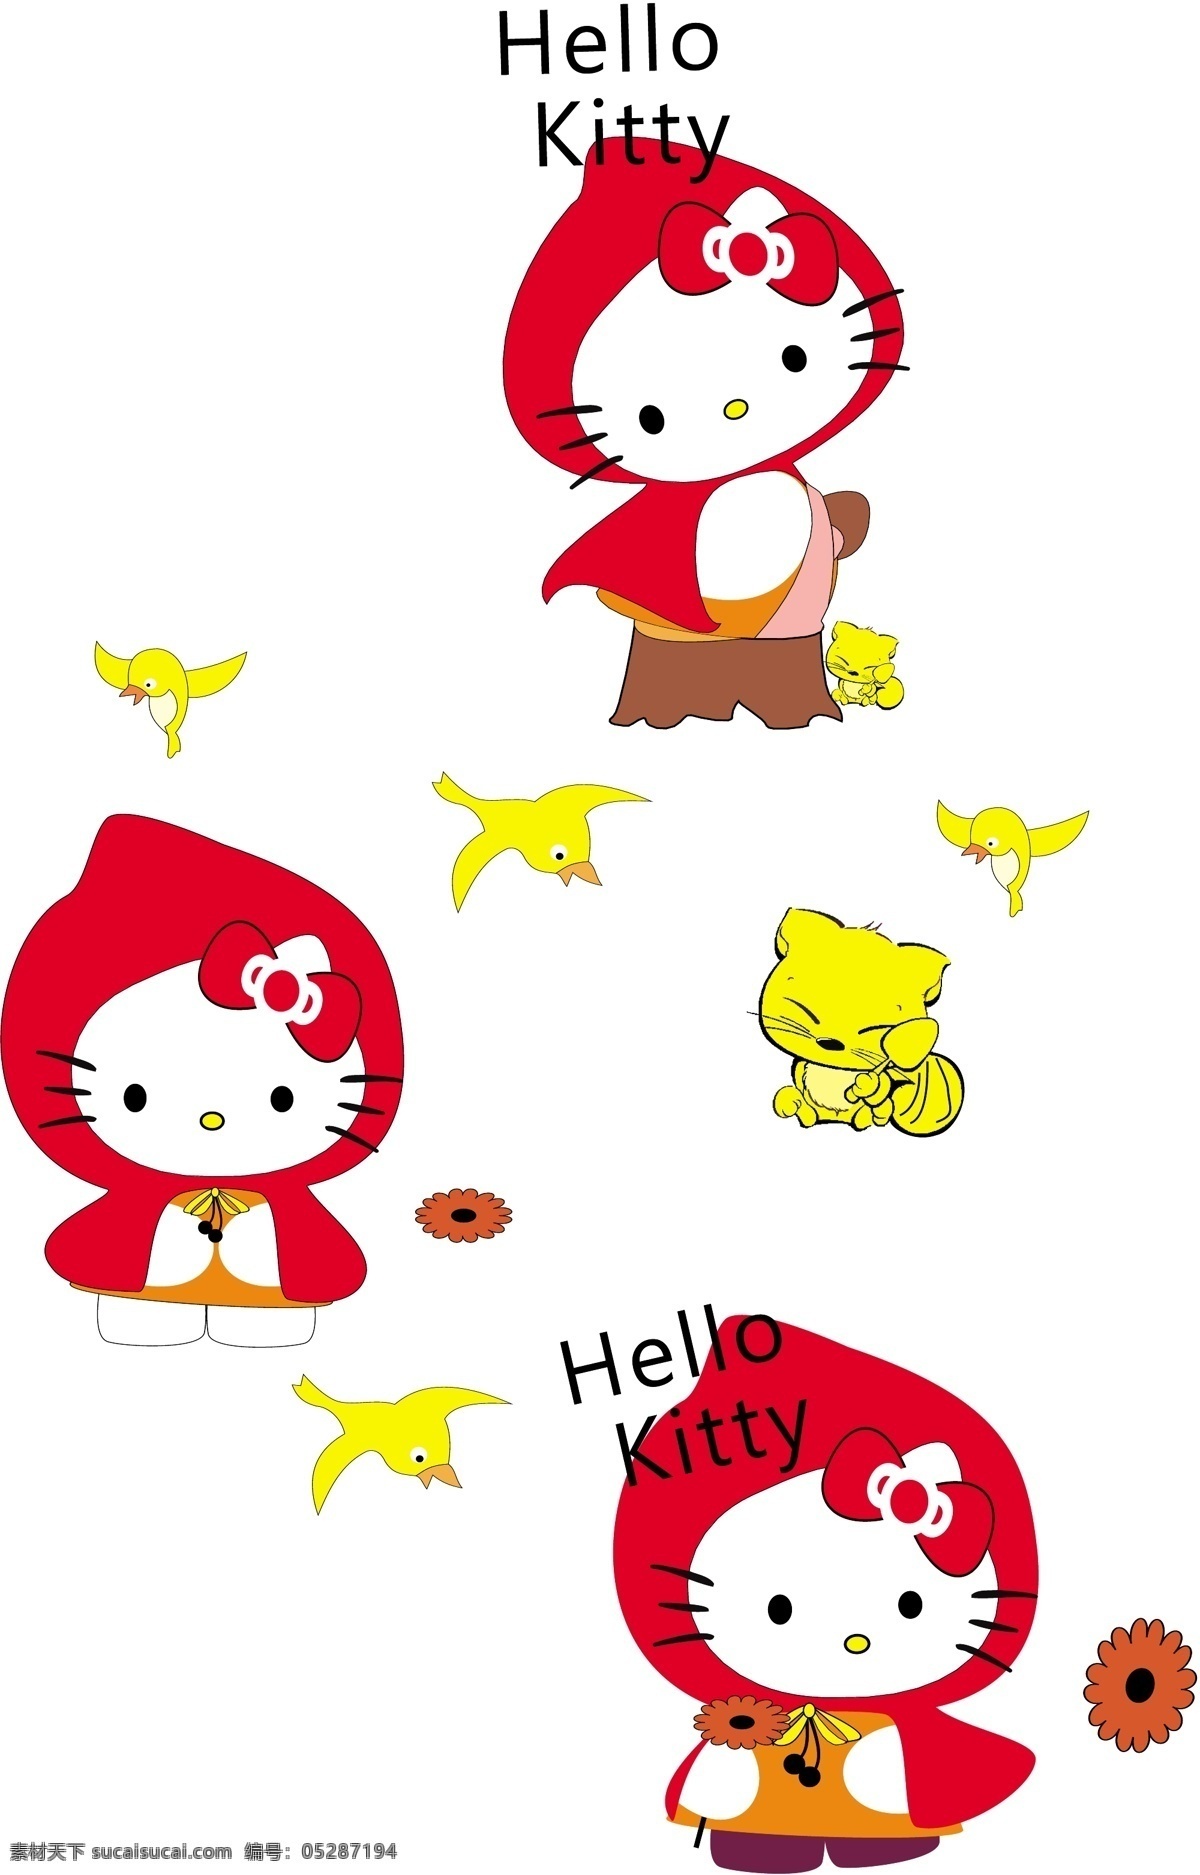 小红帽猫 小红帽 海盗 小猫 kitty 矢量素材 其他矢量 矢量